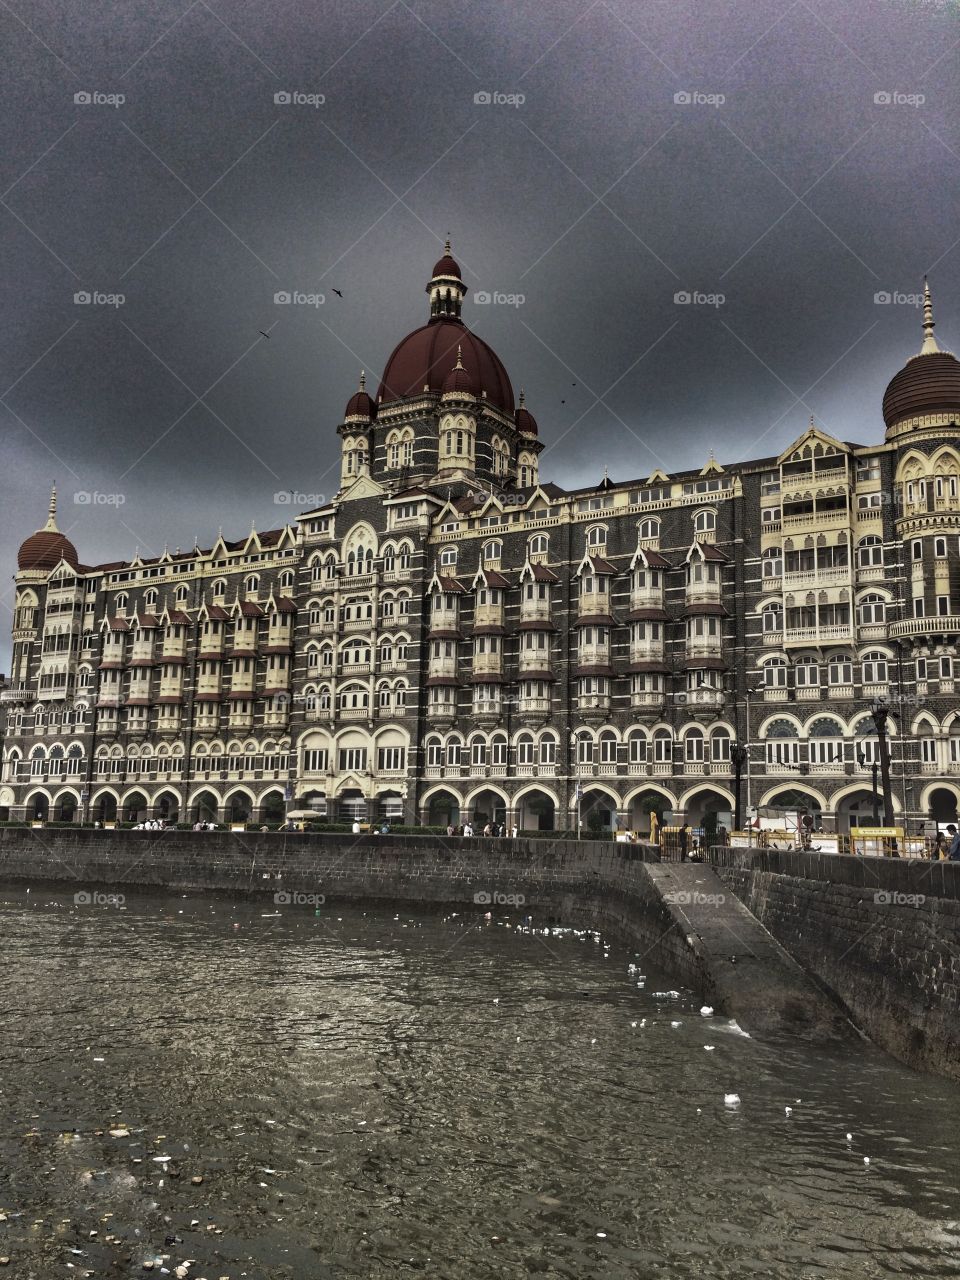 Taj hotel in India 